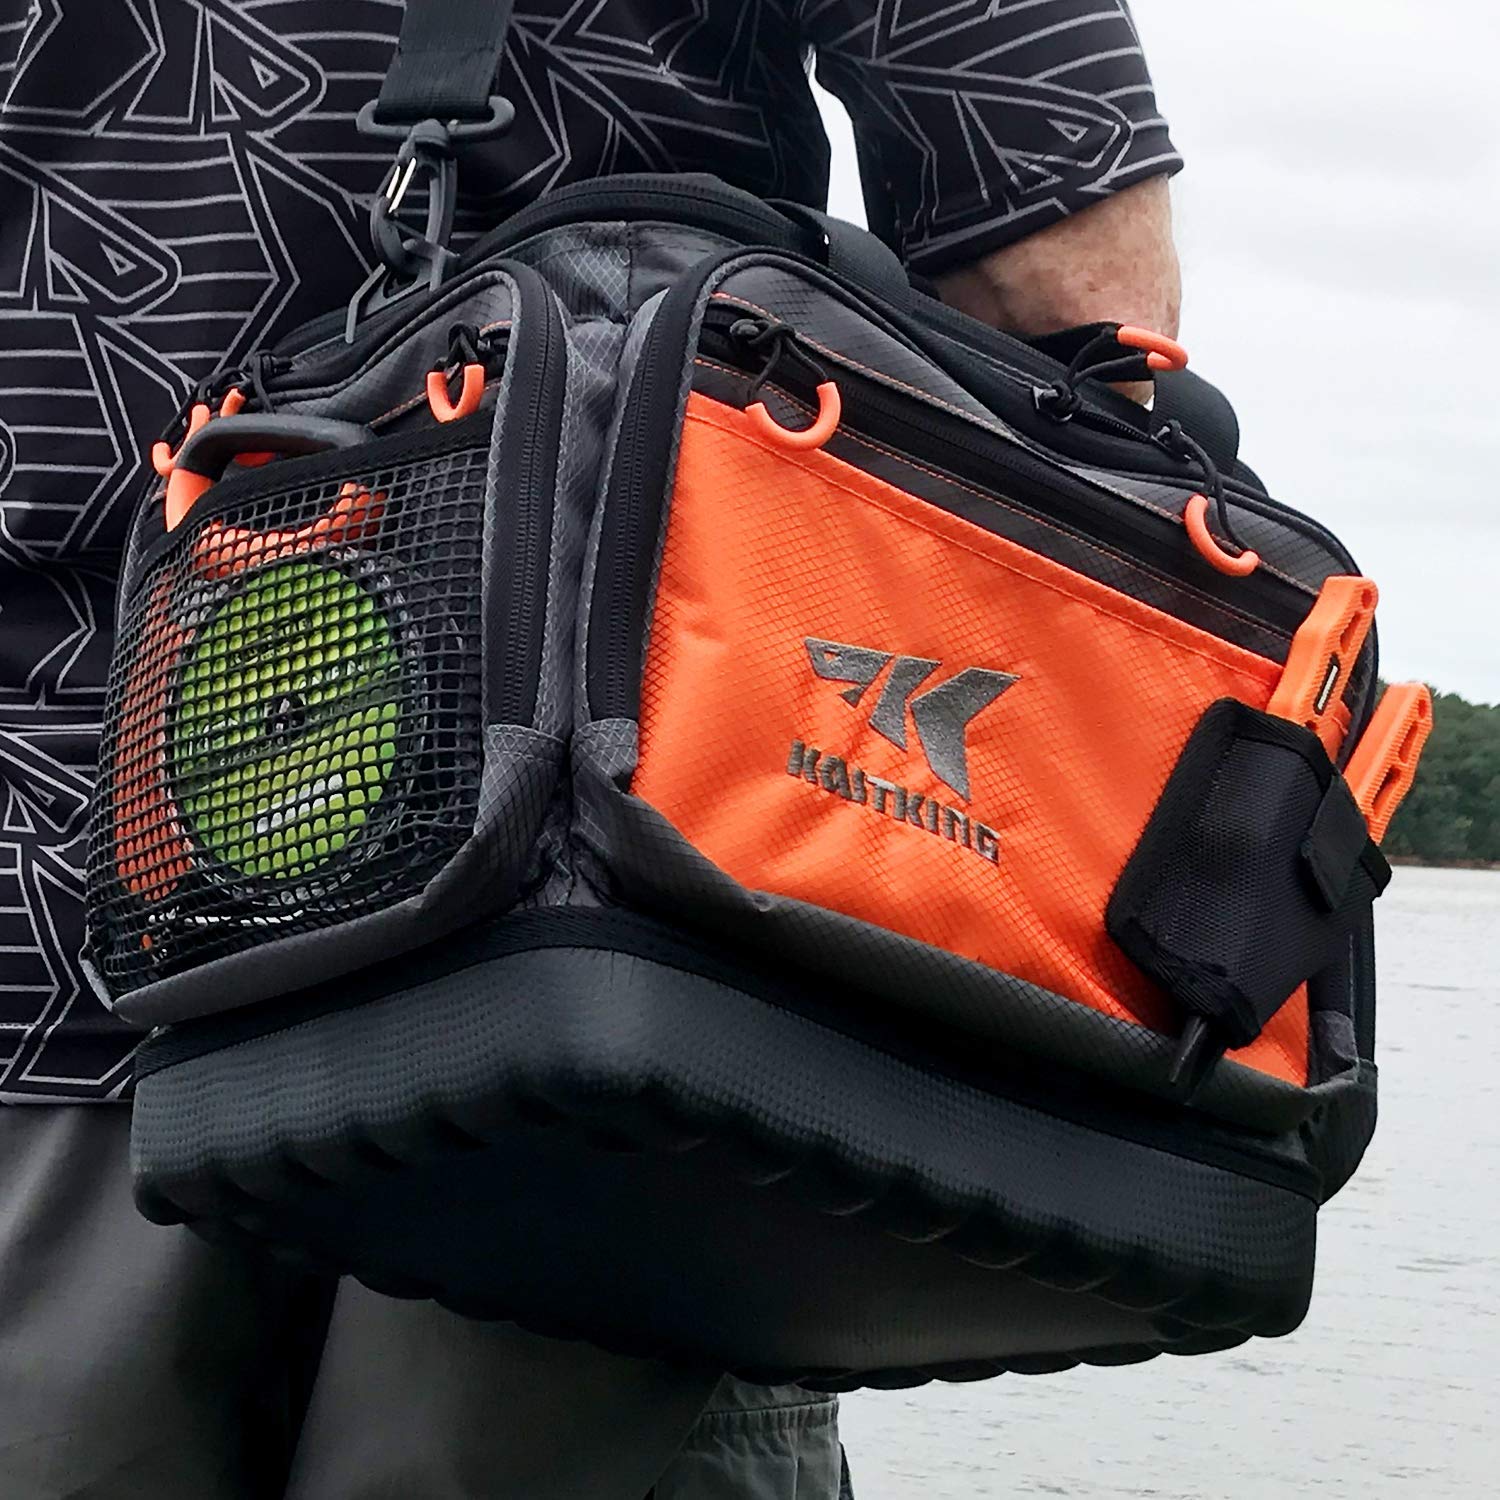 KastKing BlowBak Tactical Fishing Sling Tackle Storage Bag